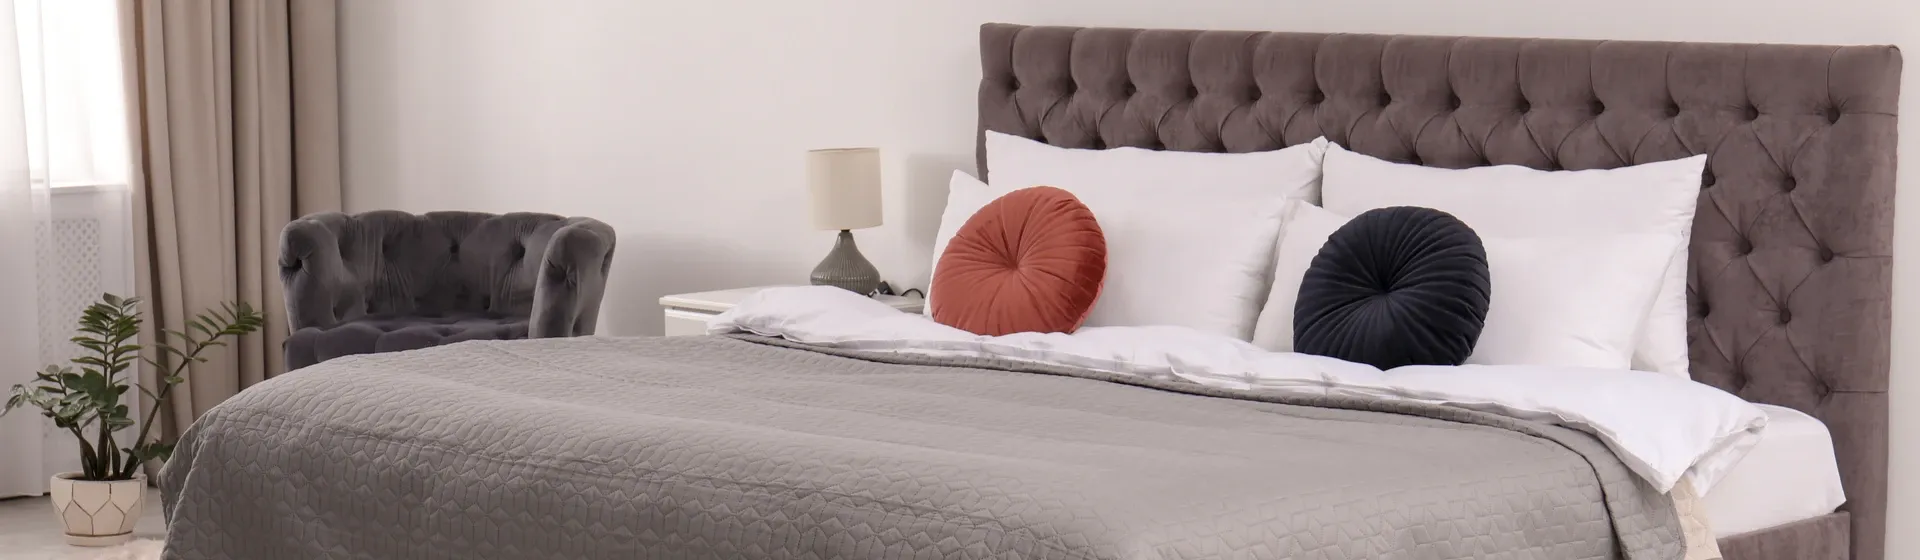 Cama de casal com cabeceira cinza, travesseiros brancos e colcha cinza em quarto